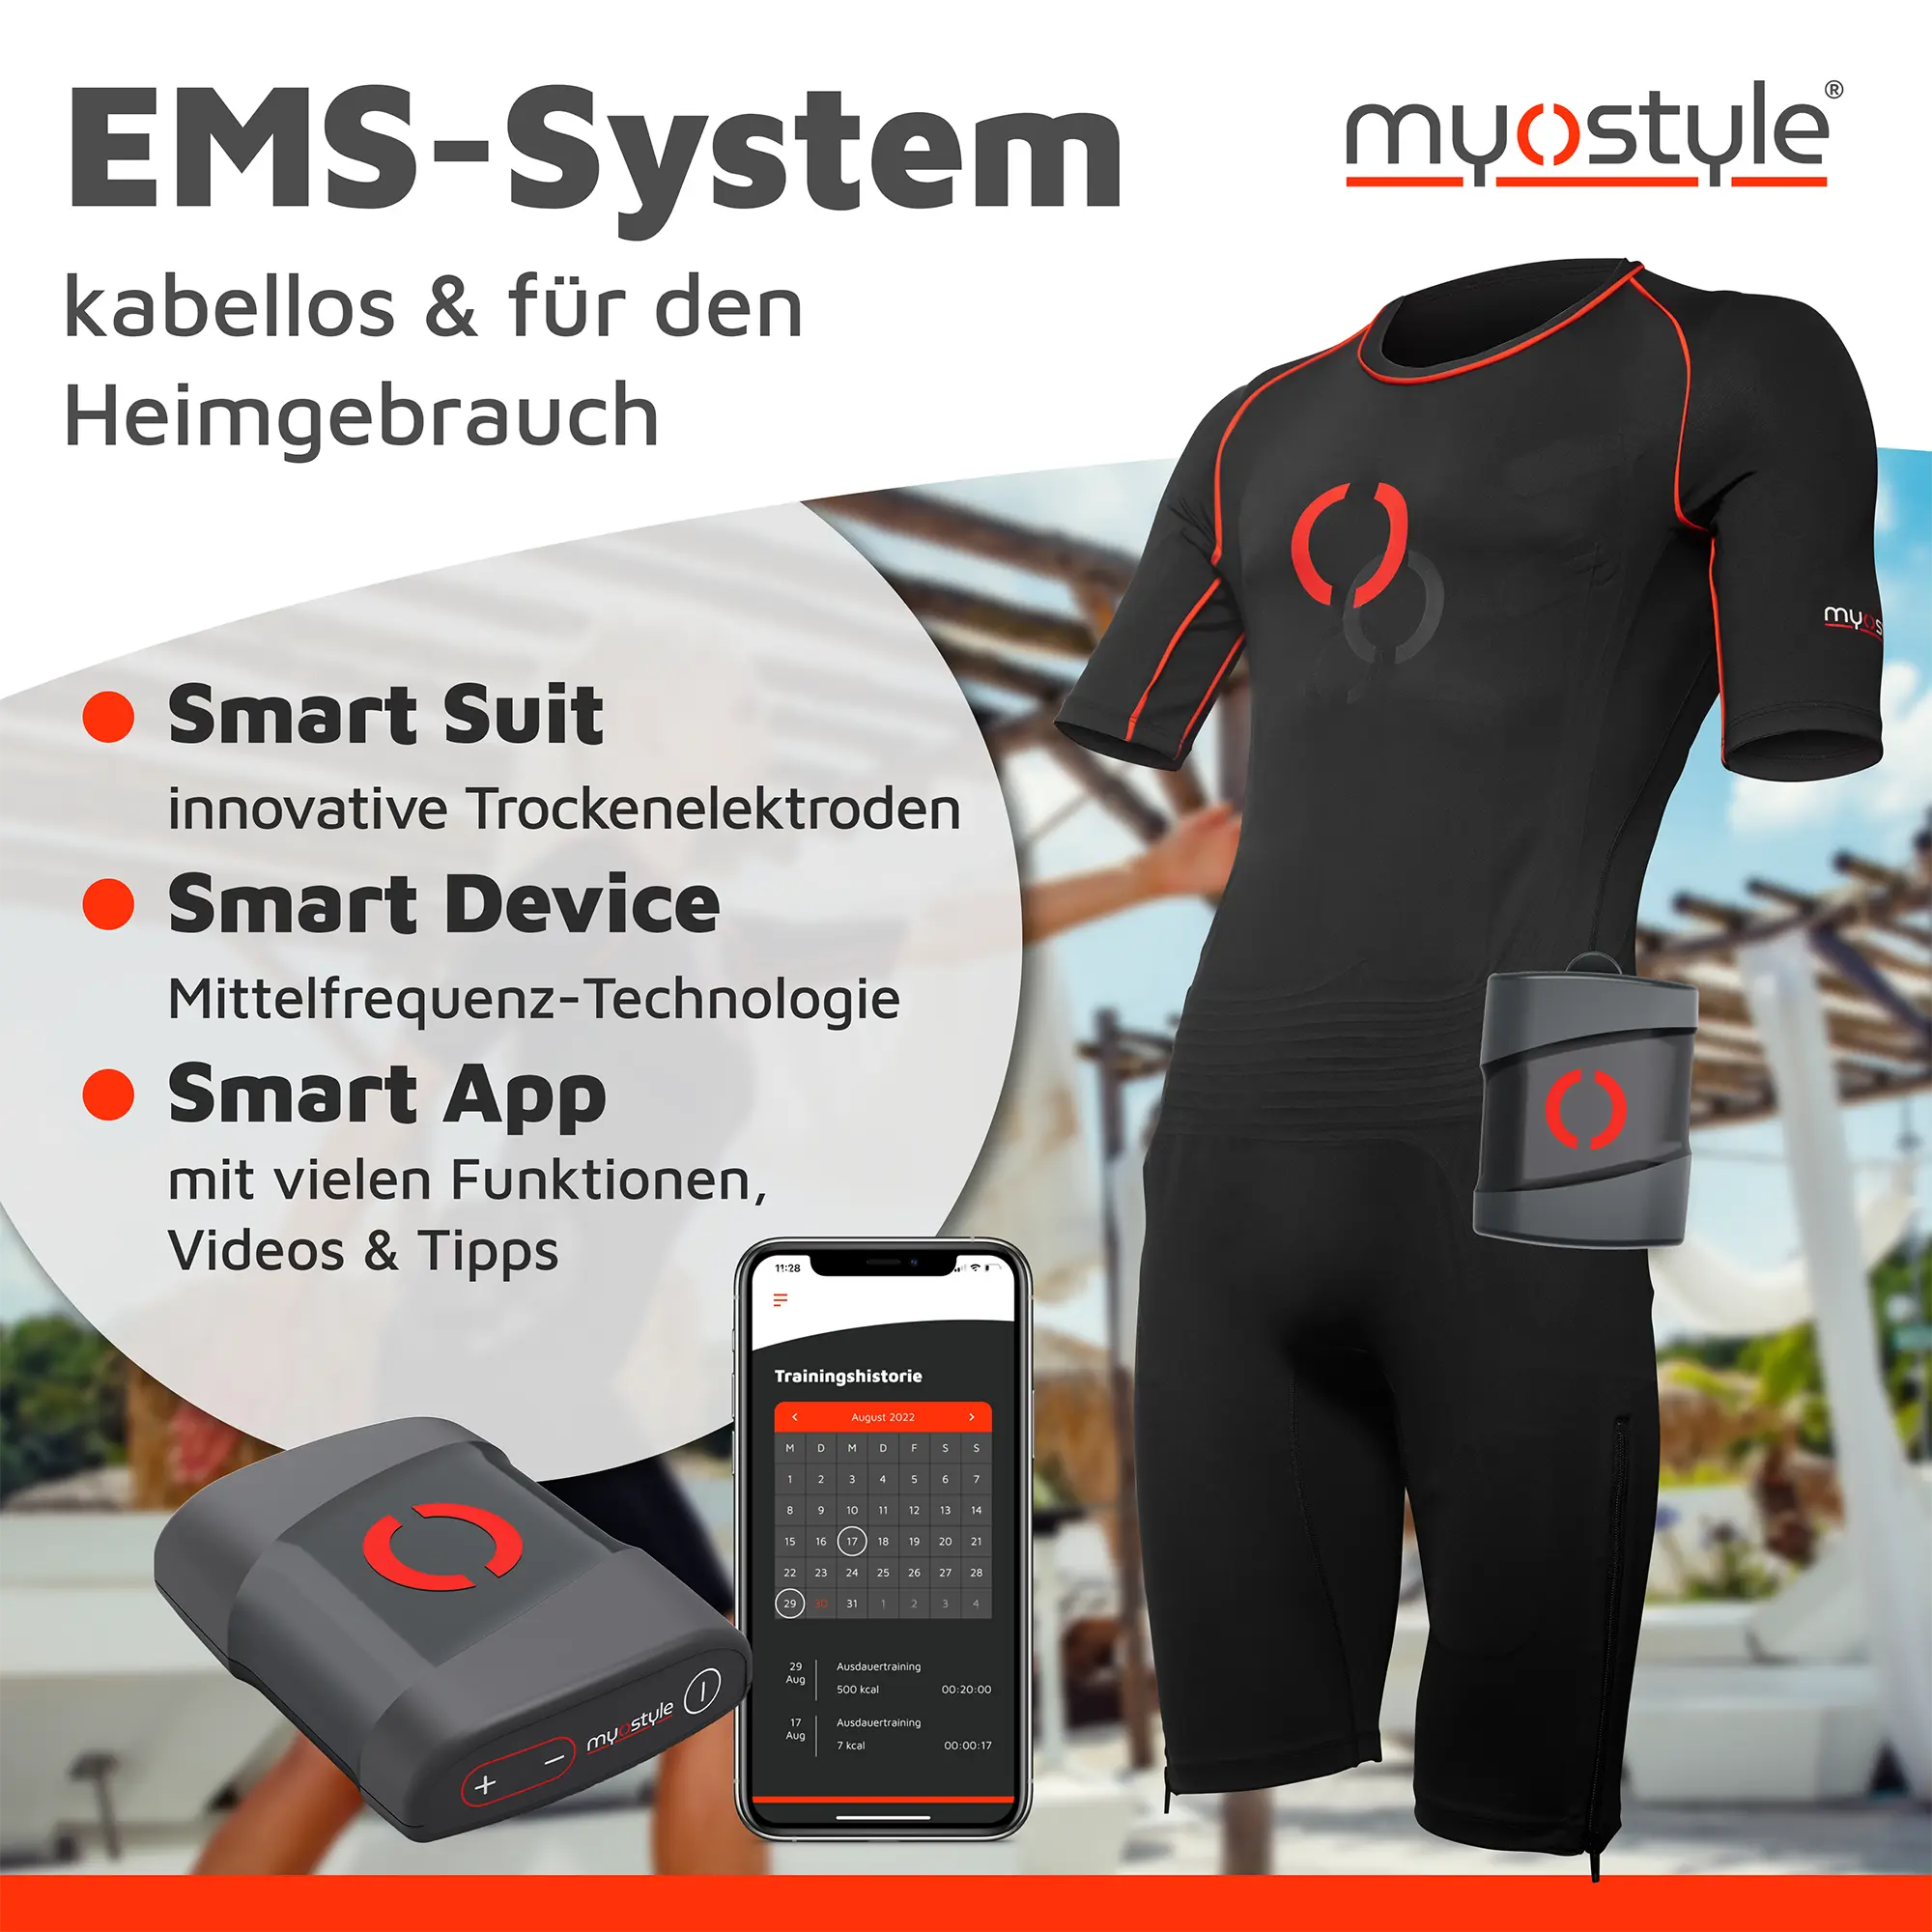 Komplettes kabelloses EMS-Trainingssystem von myostyle. Gezeigt werden der EMS-Smart-Anzug, das EMS-Smart-Gerät und die EMS-Smart-App für den Heimgebrauch.